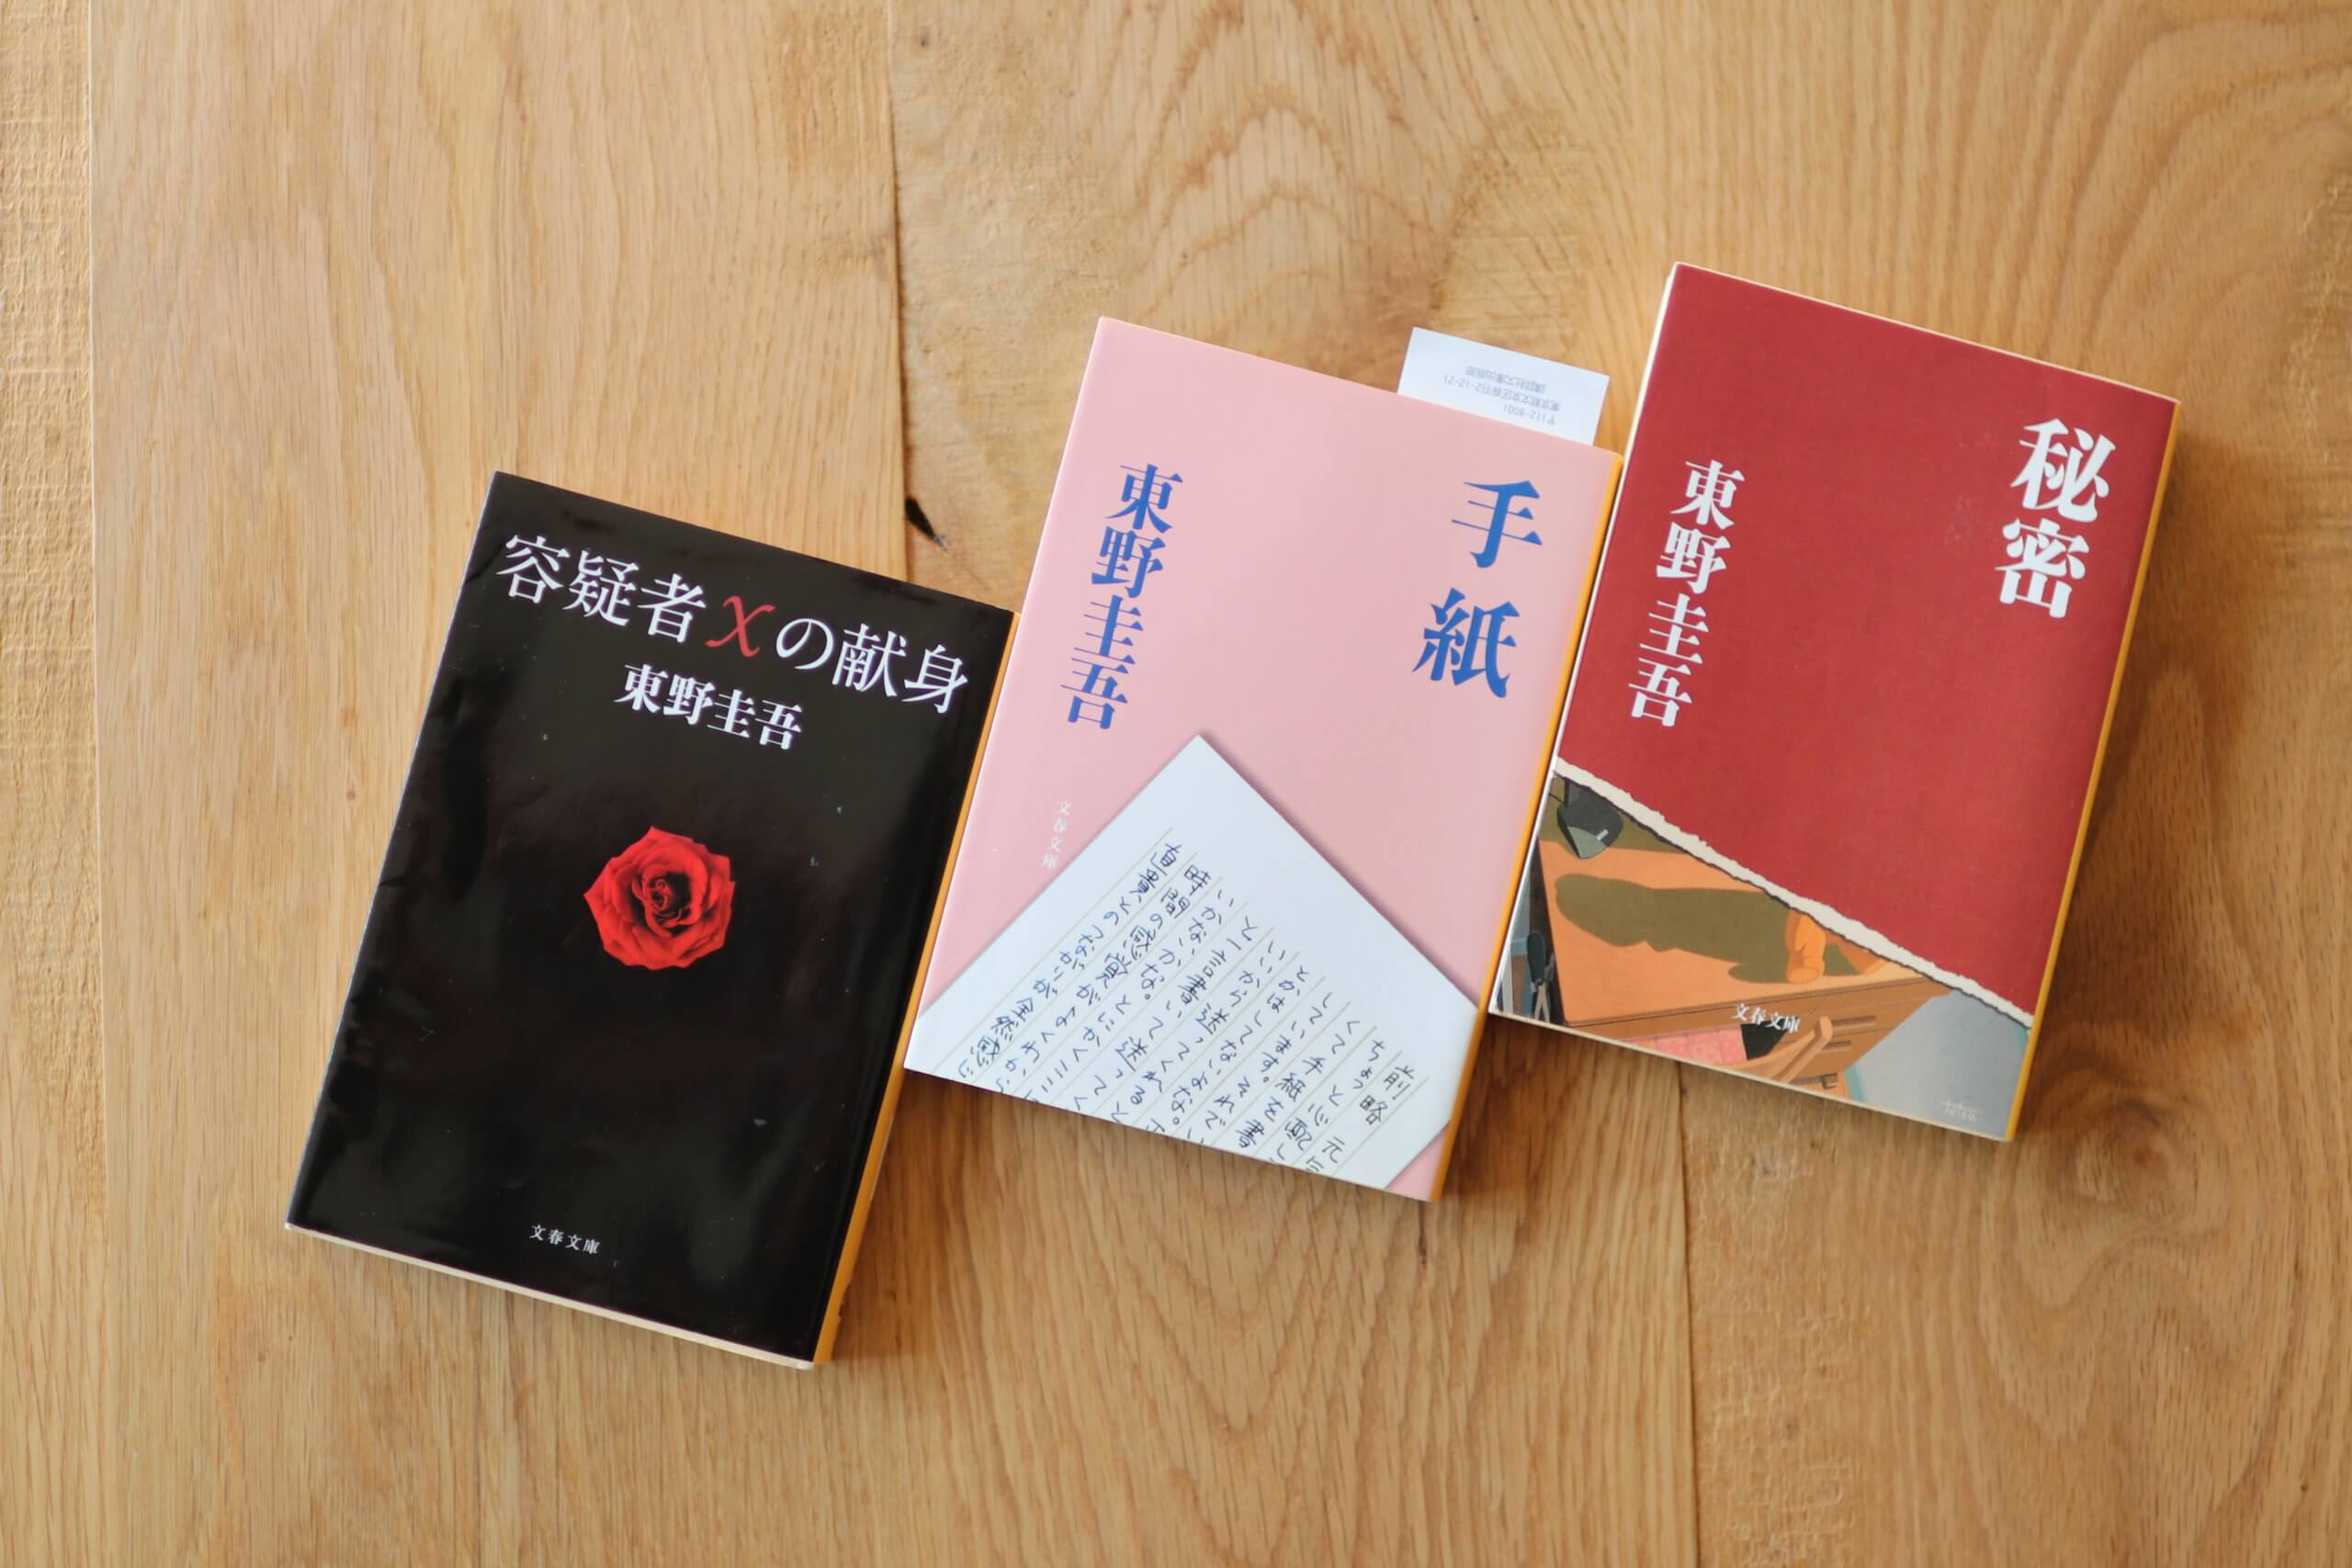 おうち時間。読書のすすめ、東野圭吾まずはこの３冊。